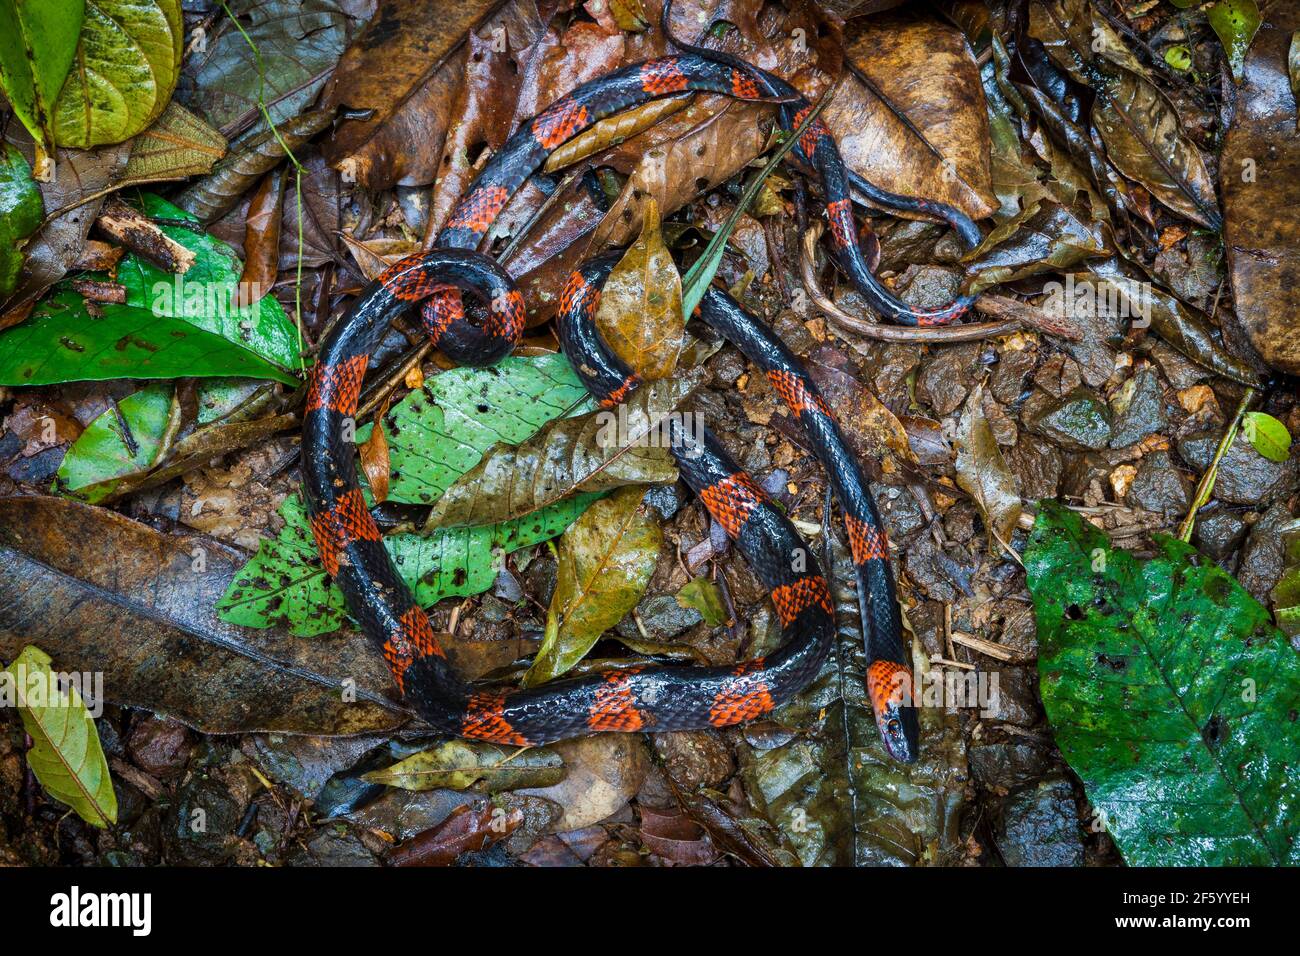 Calico falsa serpiente de coral, Oxyrhopus petolarius, en el suelo en el bosque nublado del parque nacional Omar Torrijos, provincia de Cocle, República de Panamá. Foto de stock